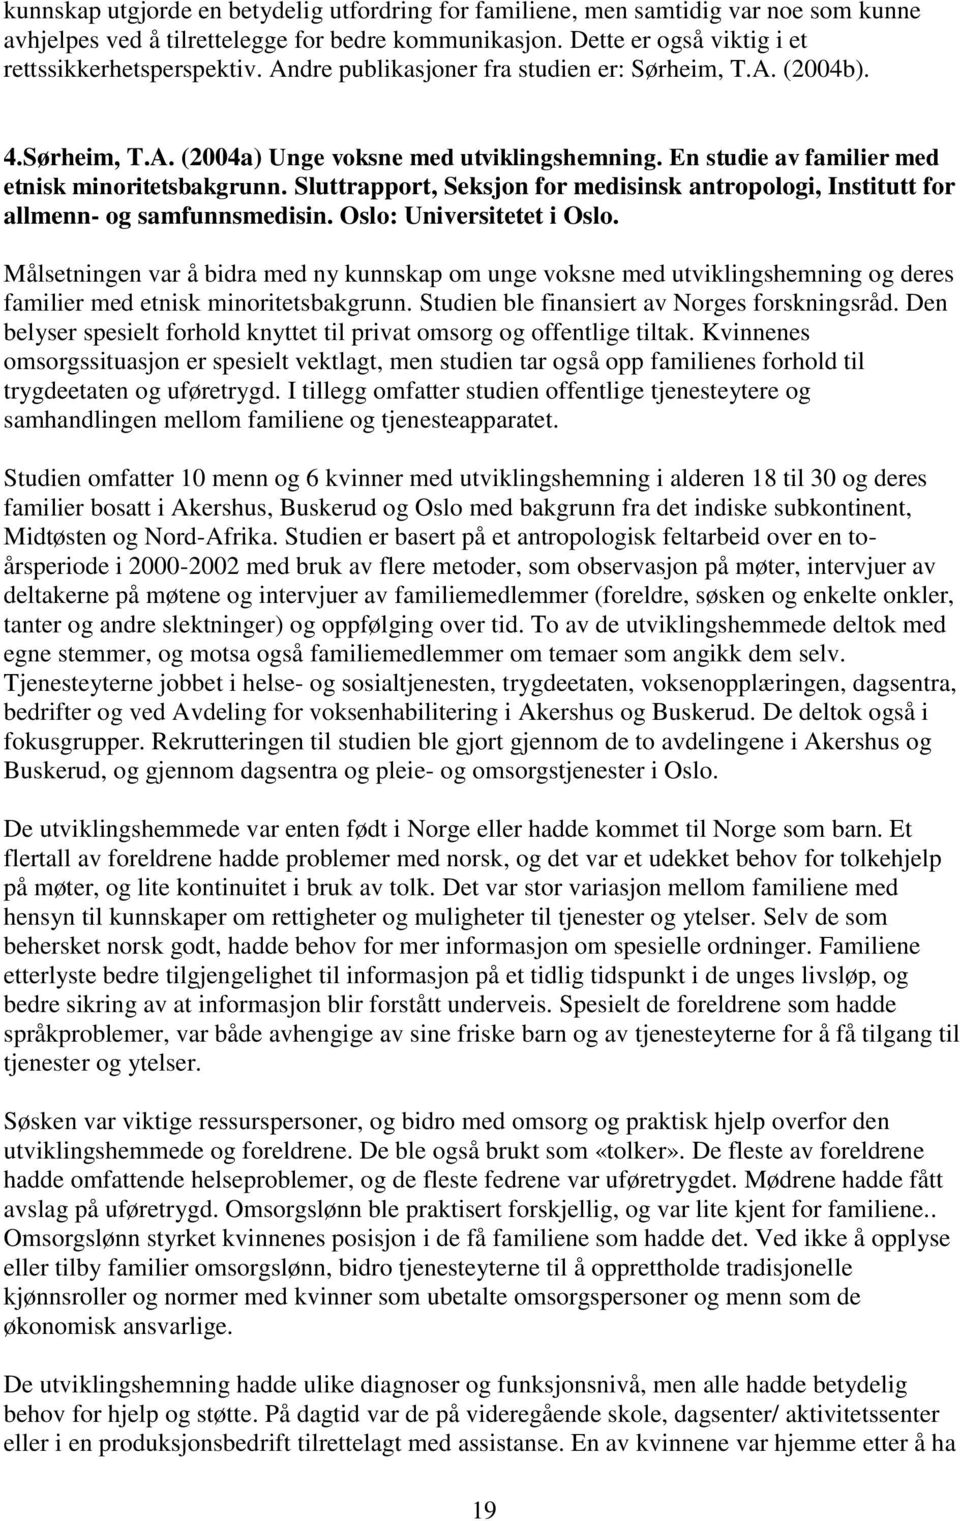 Sluttrapport, Seksjon for medisinsk antropologi, Institutt for allmenn- og samfunnsmedisin. Oslo: Universitetet i Oslo.